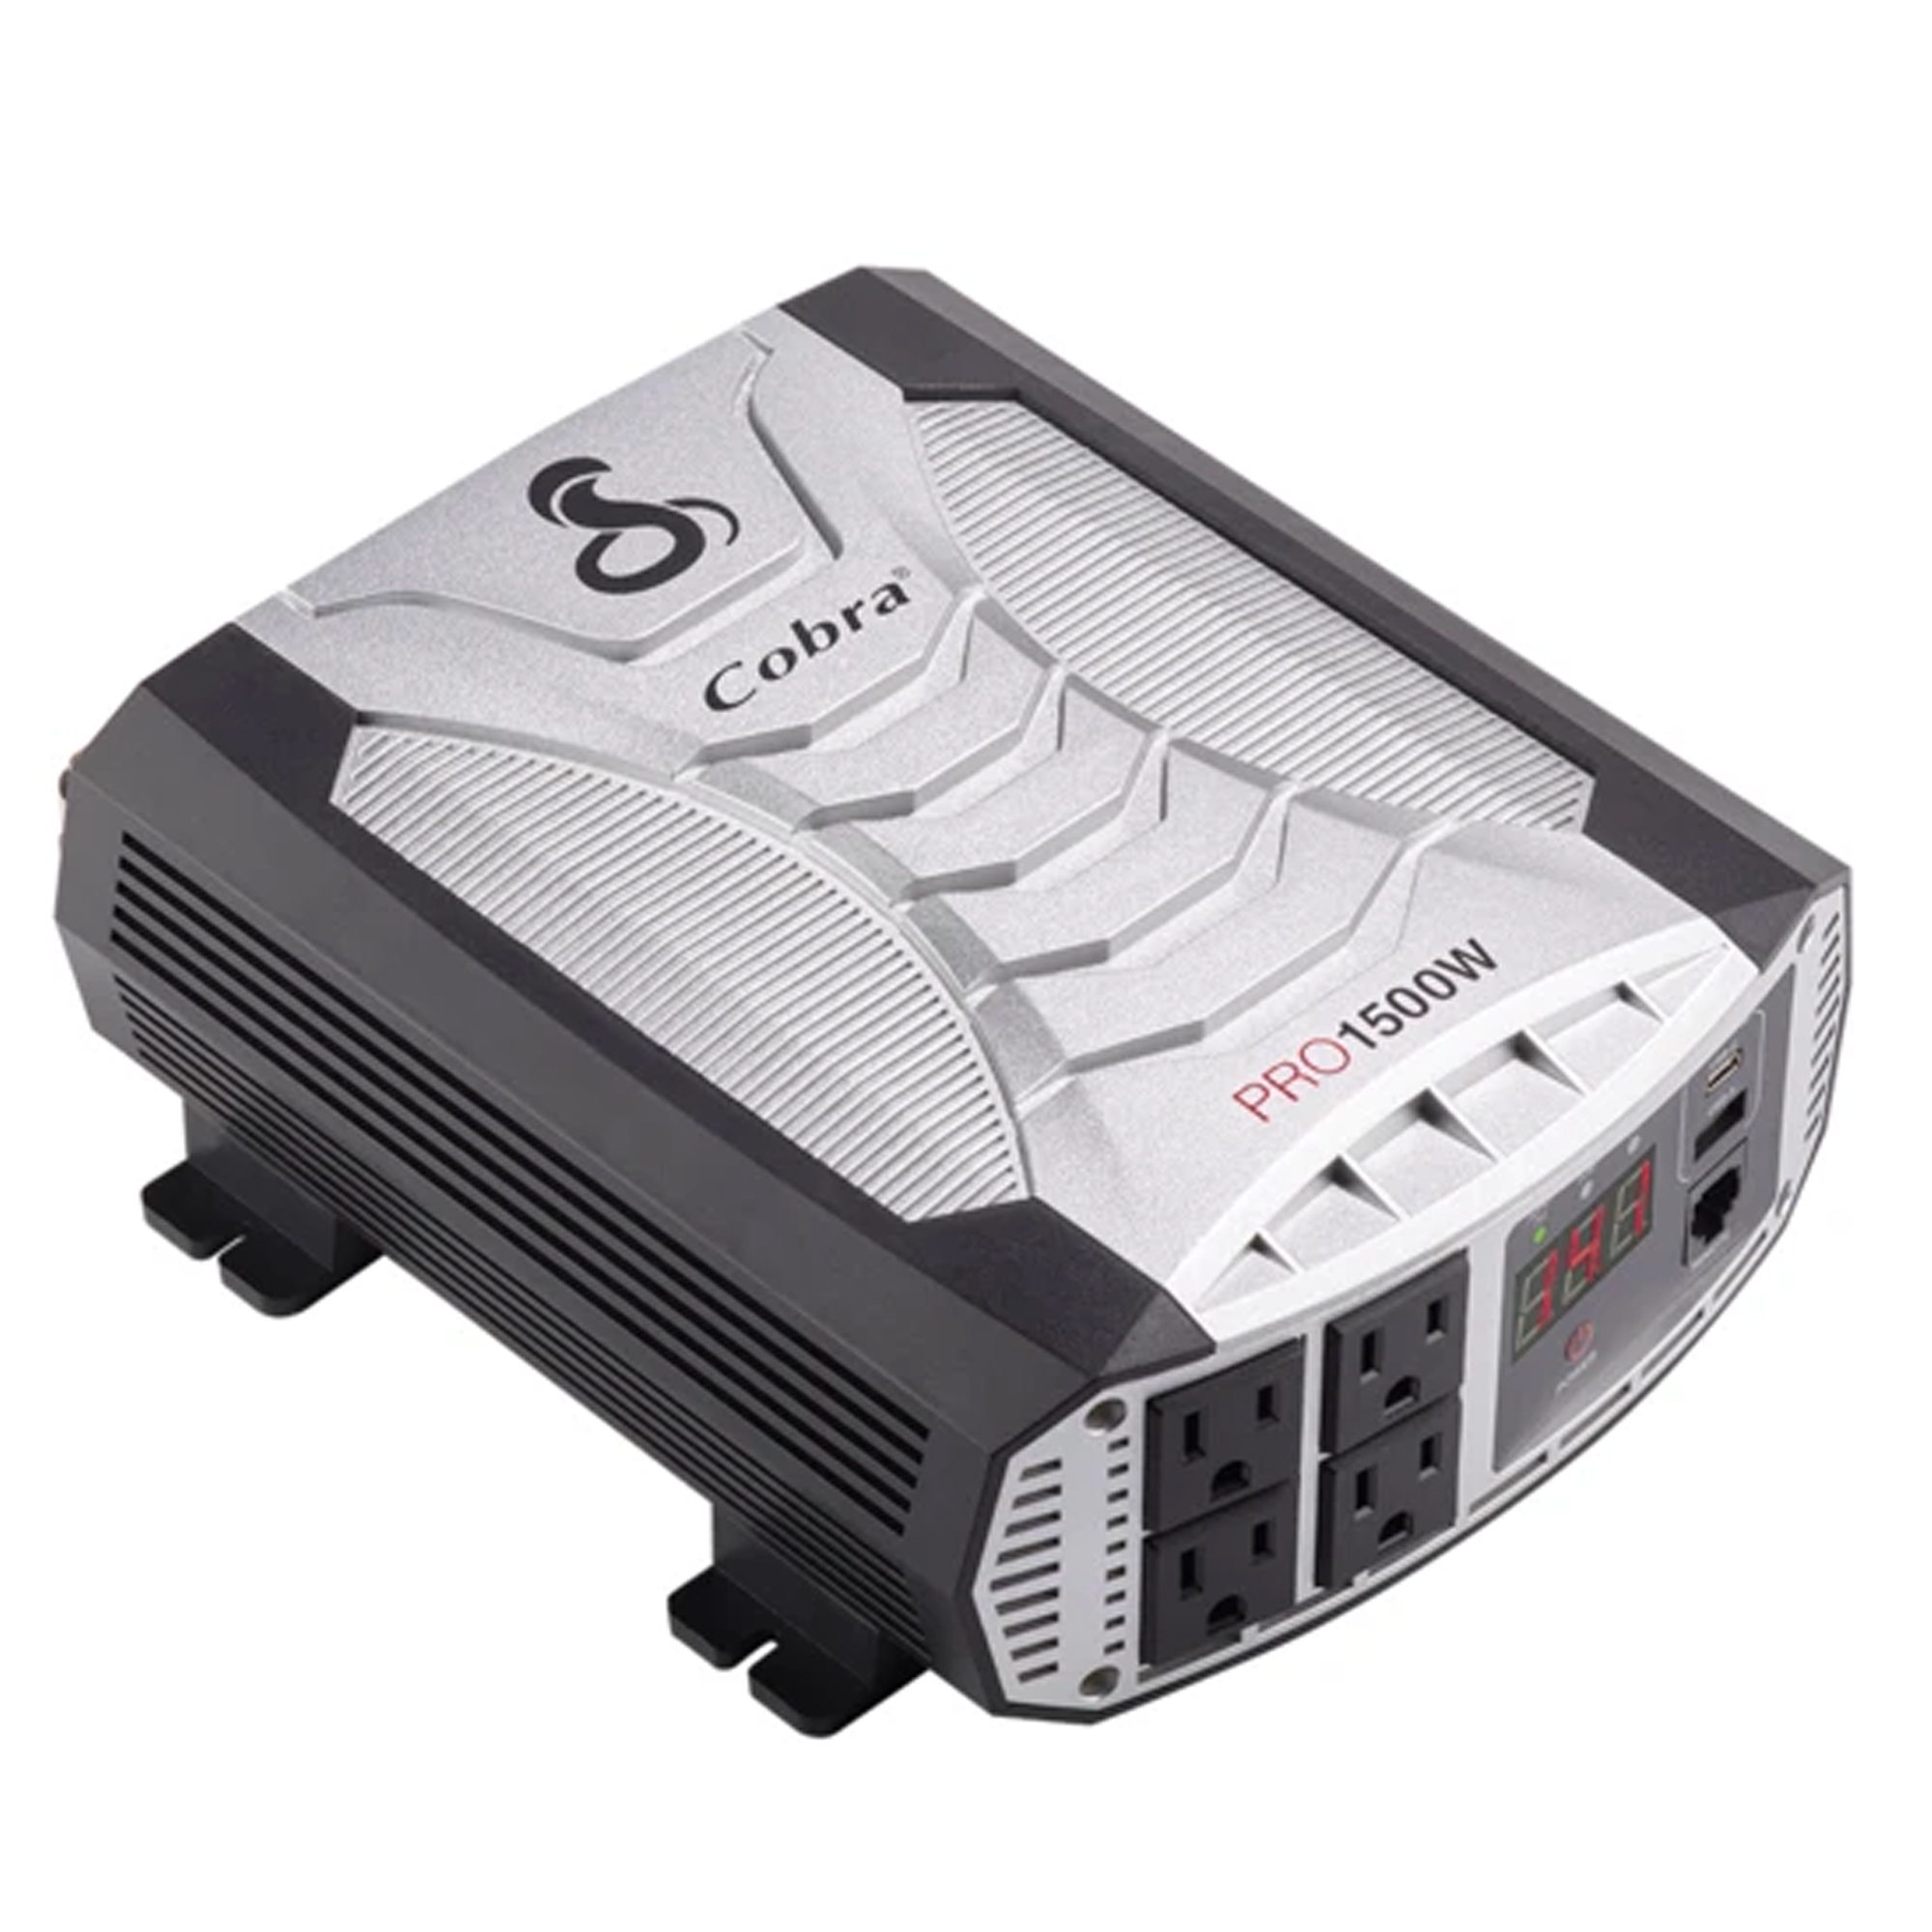 Cobra PRO 1500 Watt Professional Grade Power Inverter